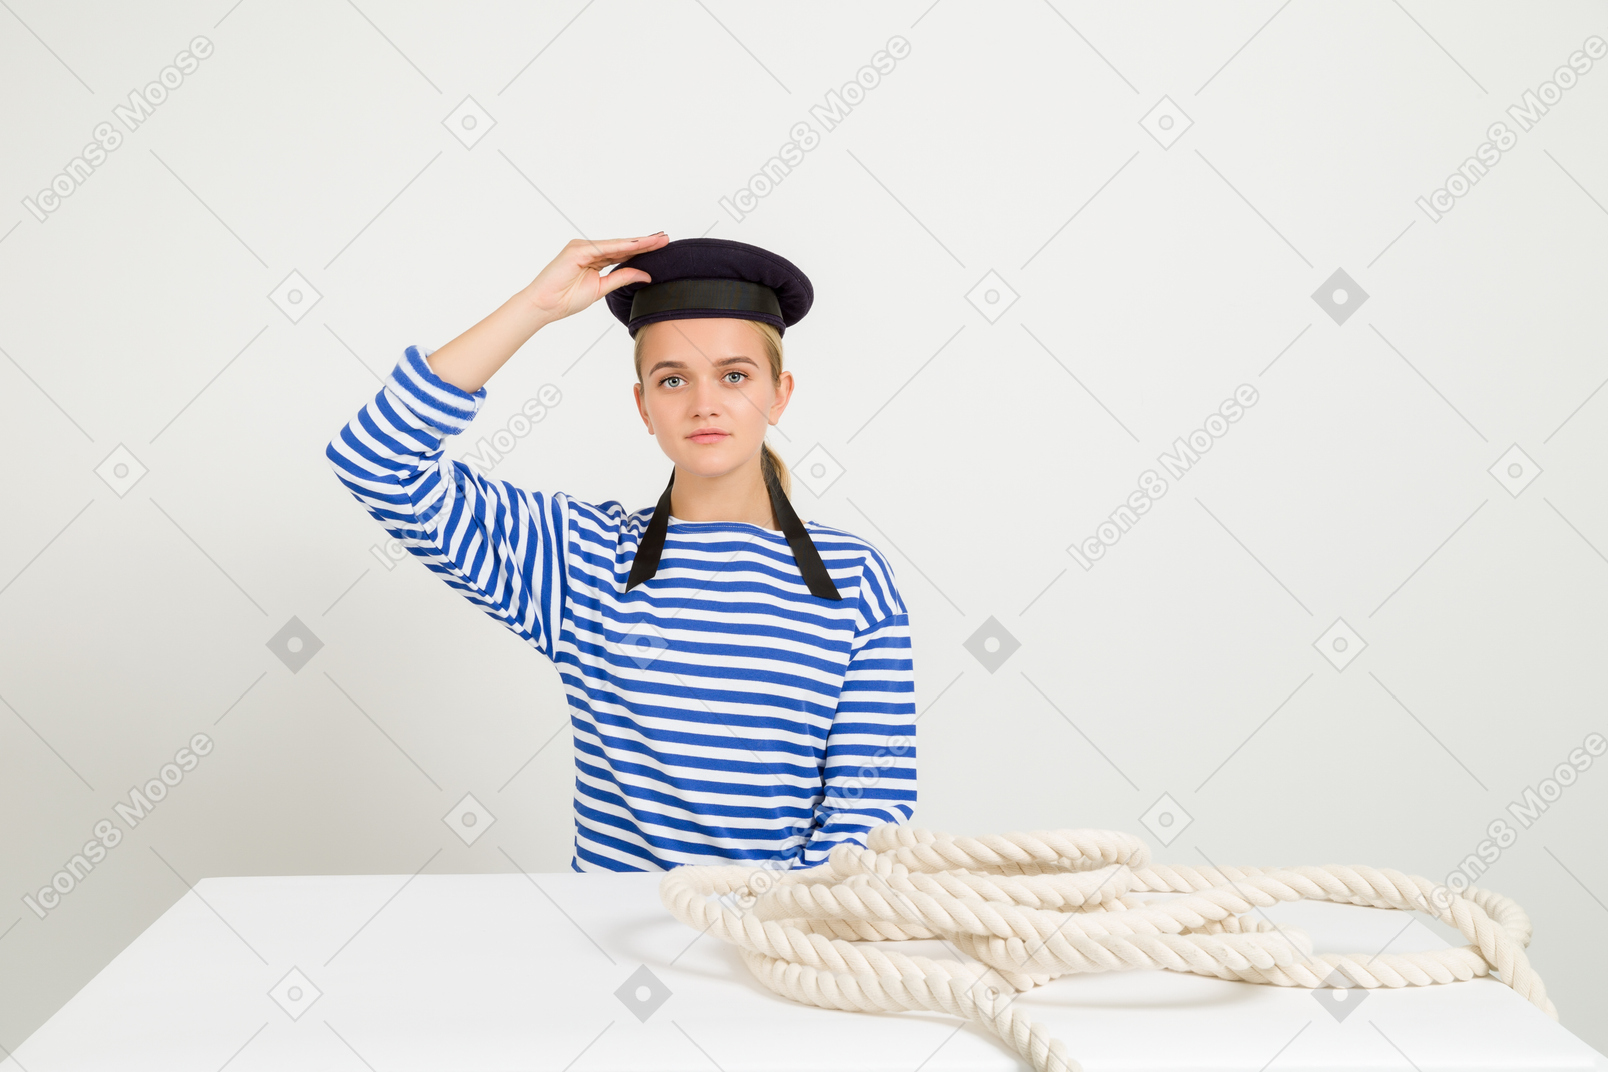 Marin de famale assis à la table avec une corde marine dessus et tenant une casquette de marin